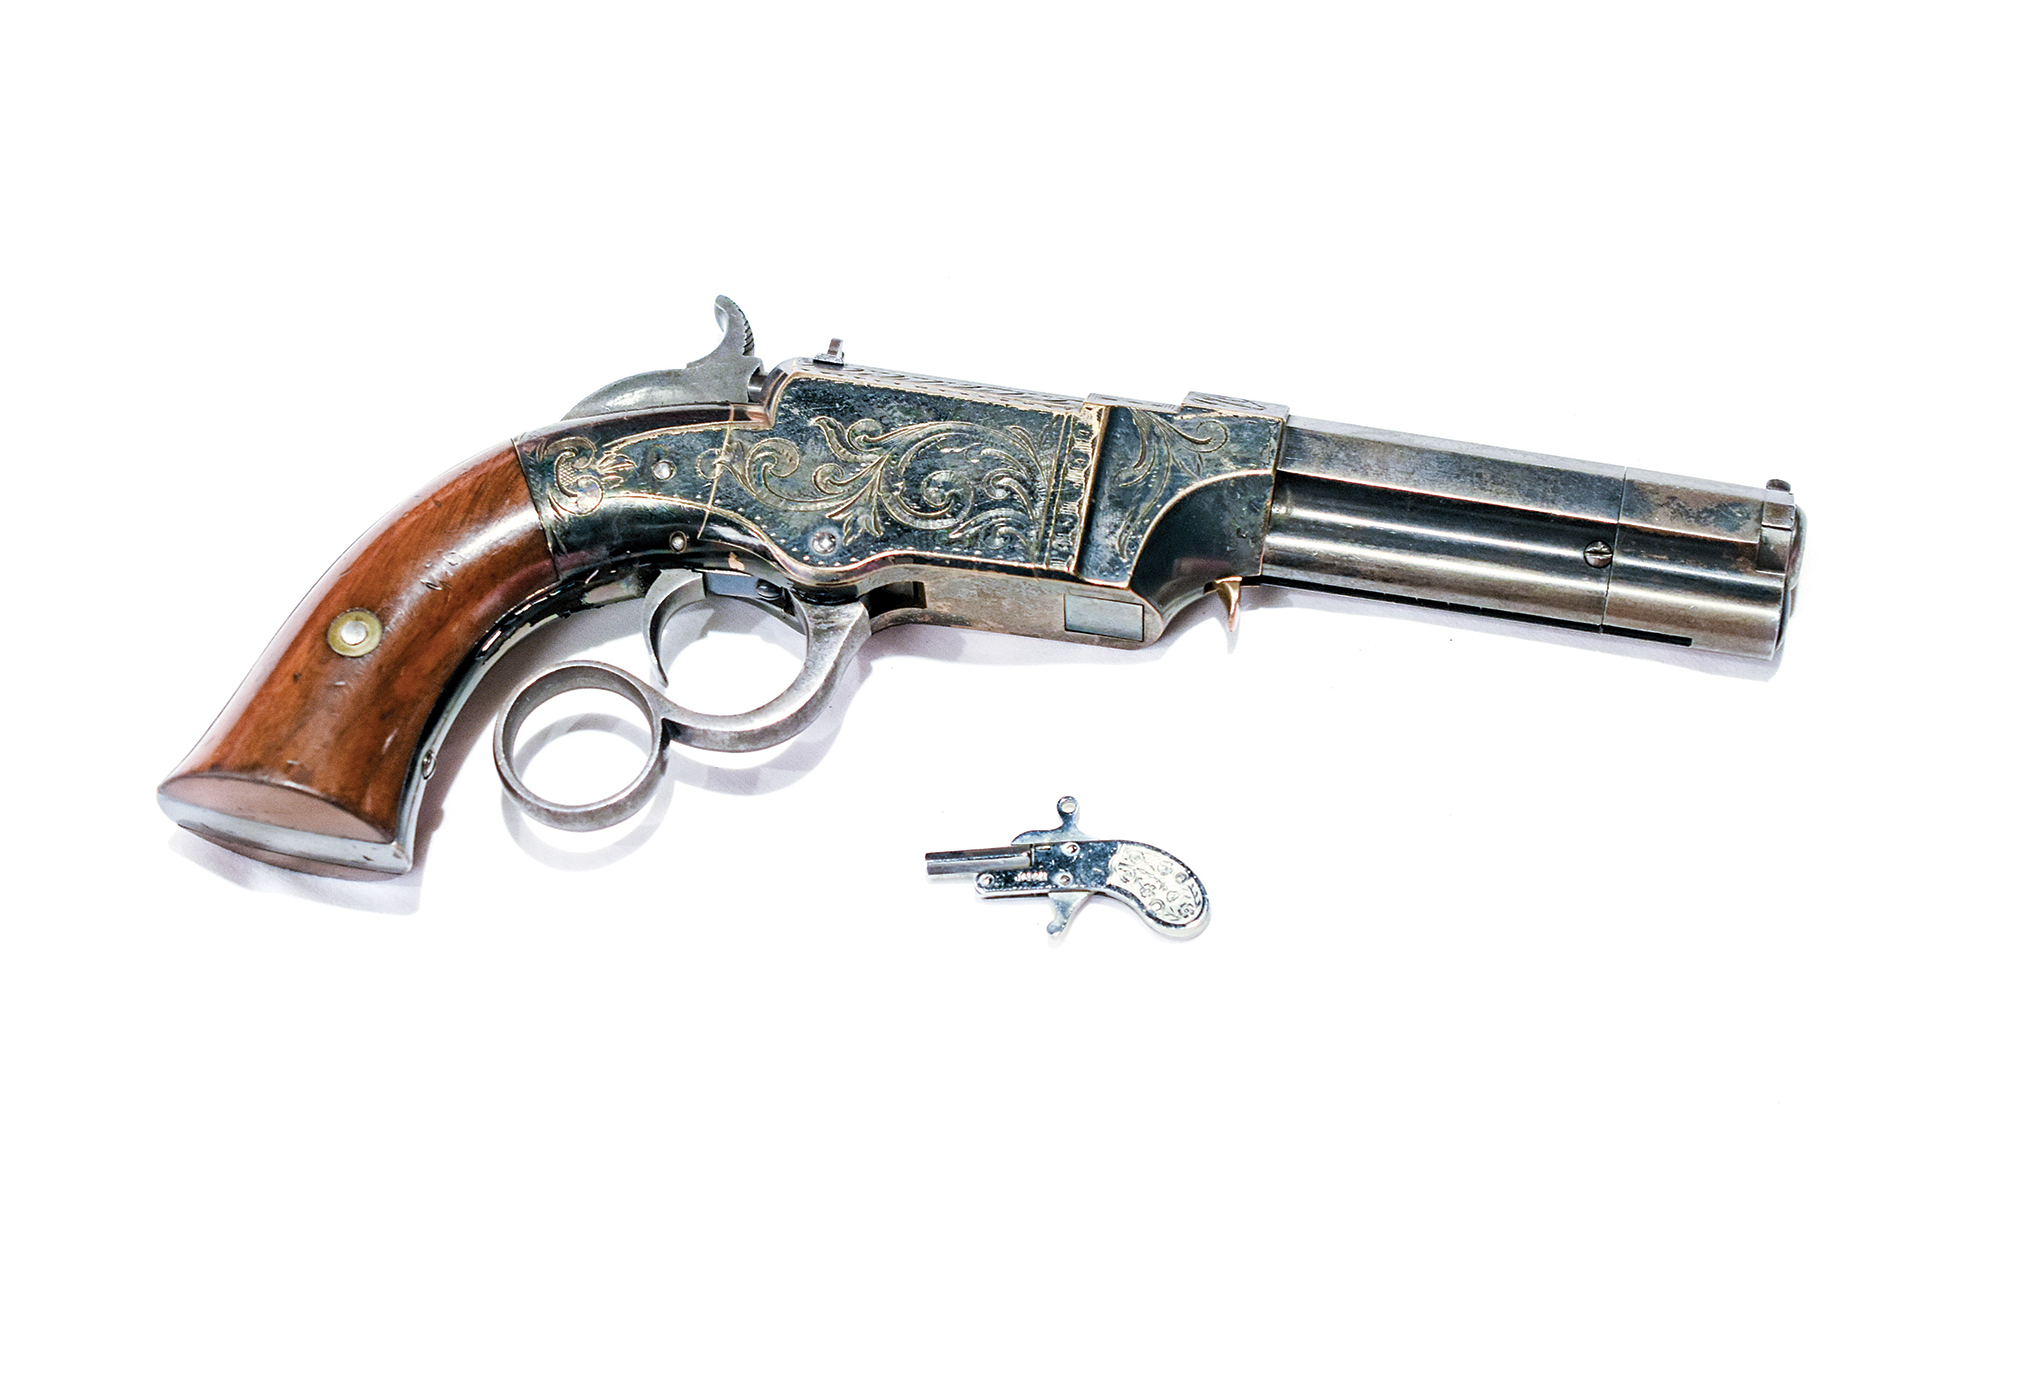 THE SMALLEST GUN OF THE WORLD ! (berloque pistol) 